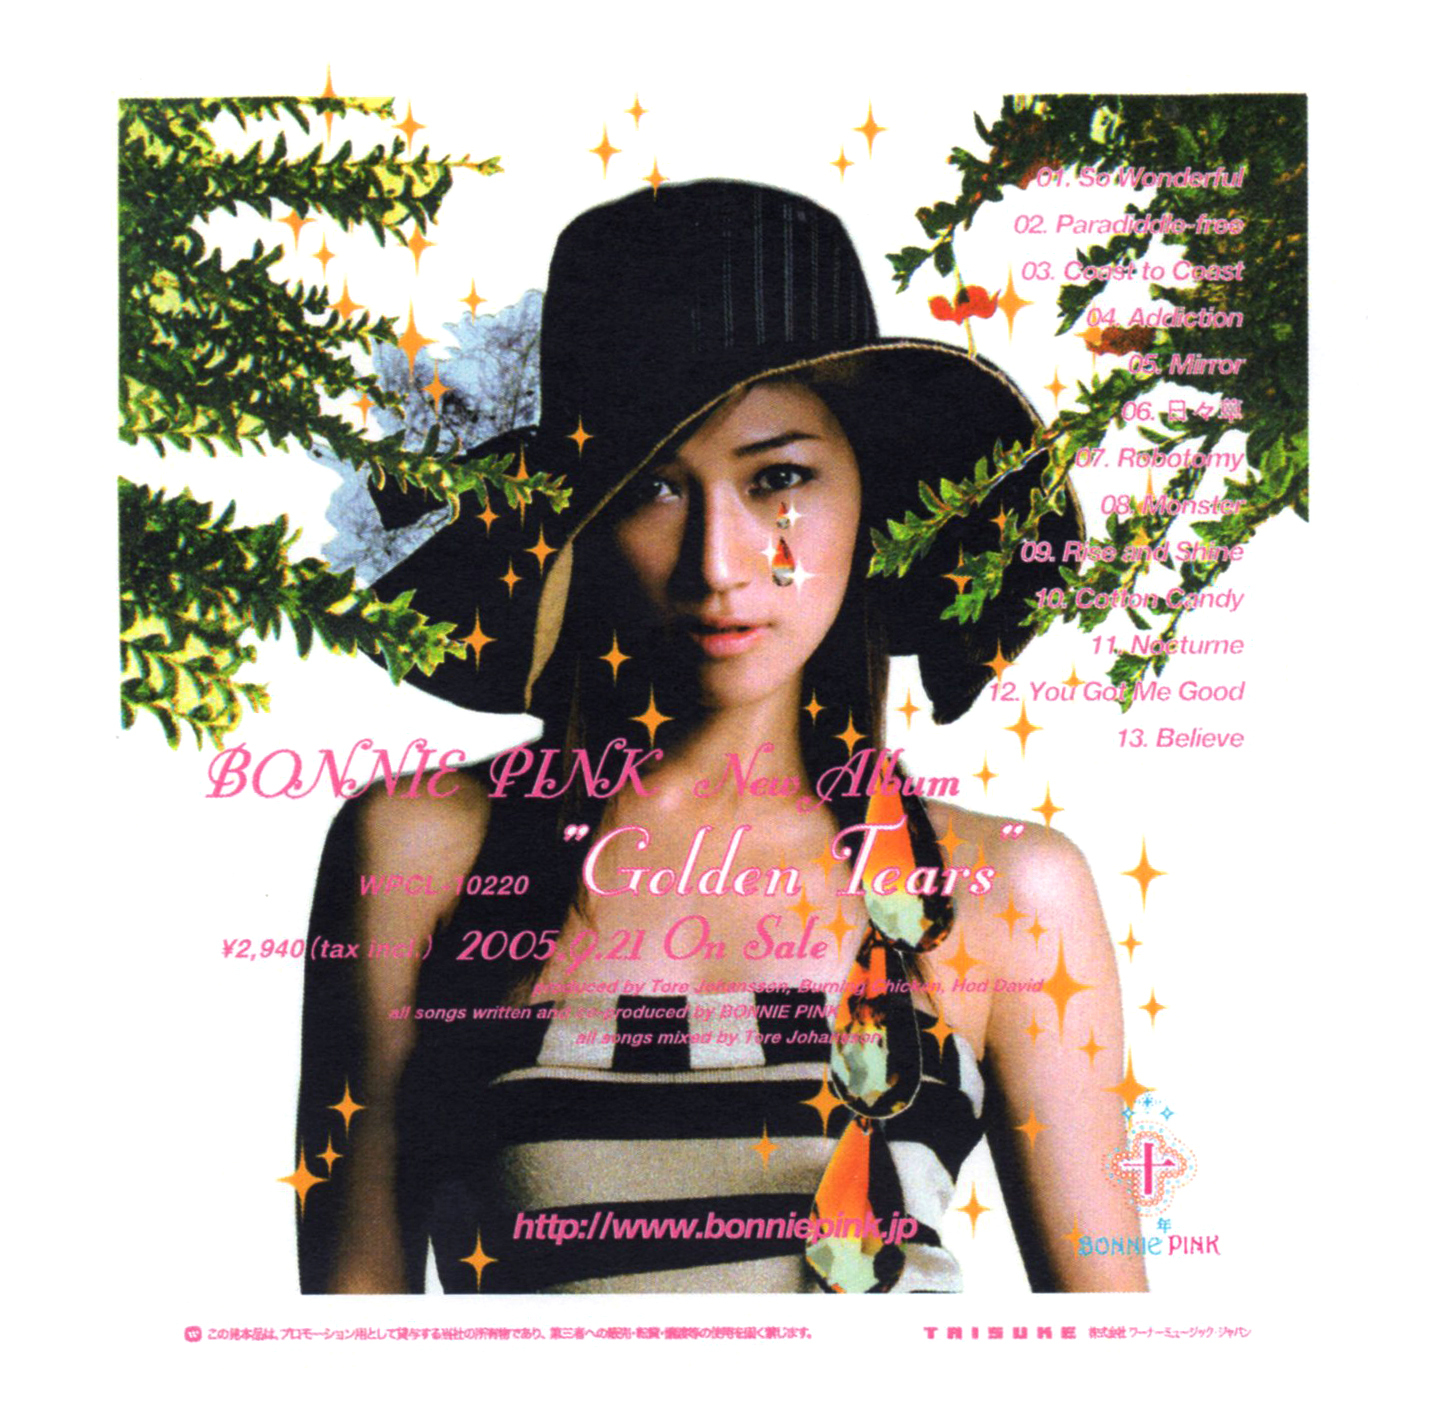 BONNIE PINK (ボニー・ピンク) 8thアルバム『Golden Tears』(非売品CD) 高画質CDジャケット画像